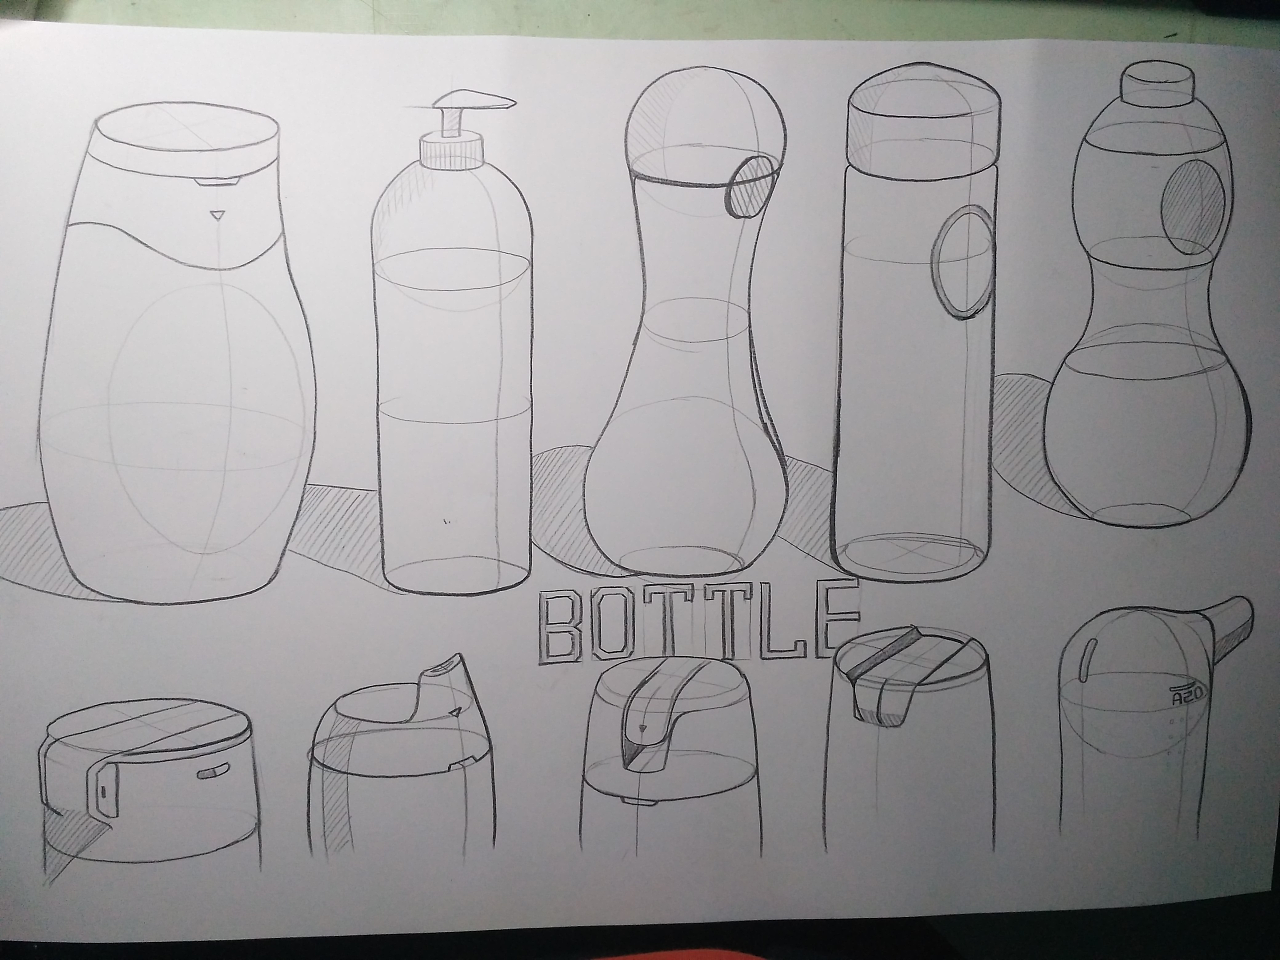 生态瓶怎么画简单图片